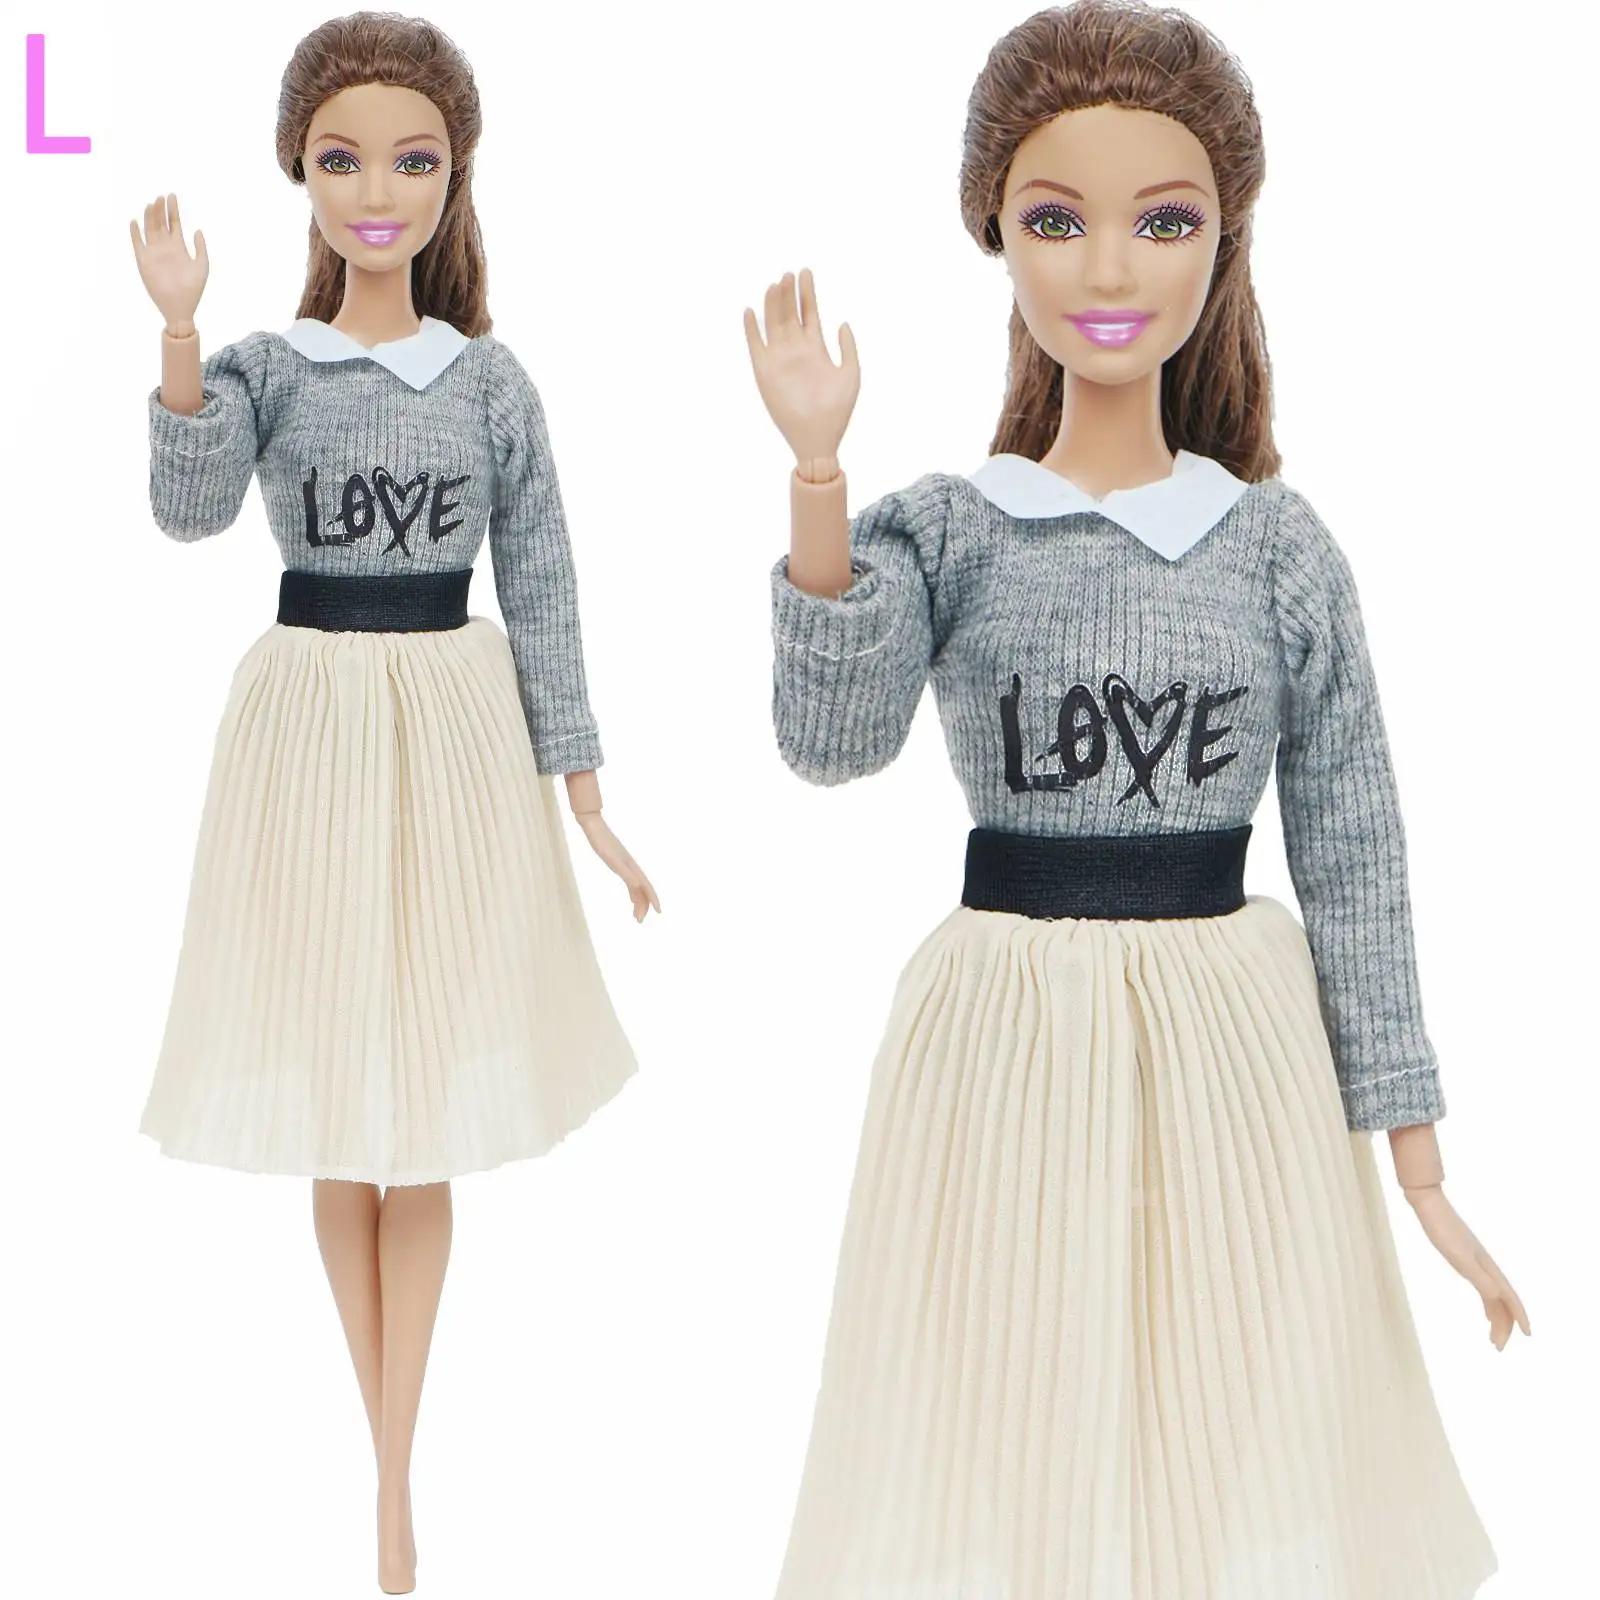 1 кукольная одежда модное платье Повседневная одежда юбка вечернее платье блузка брюки для куклы Барби аксессуары милая девочка ребенок игрушка - Цвет: L